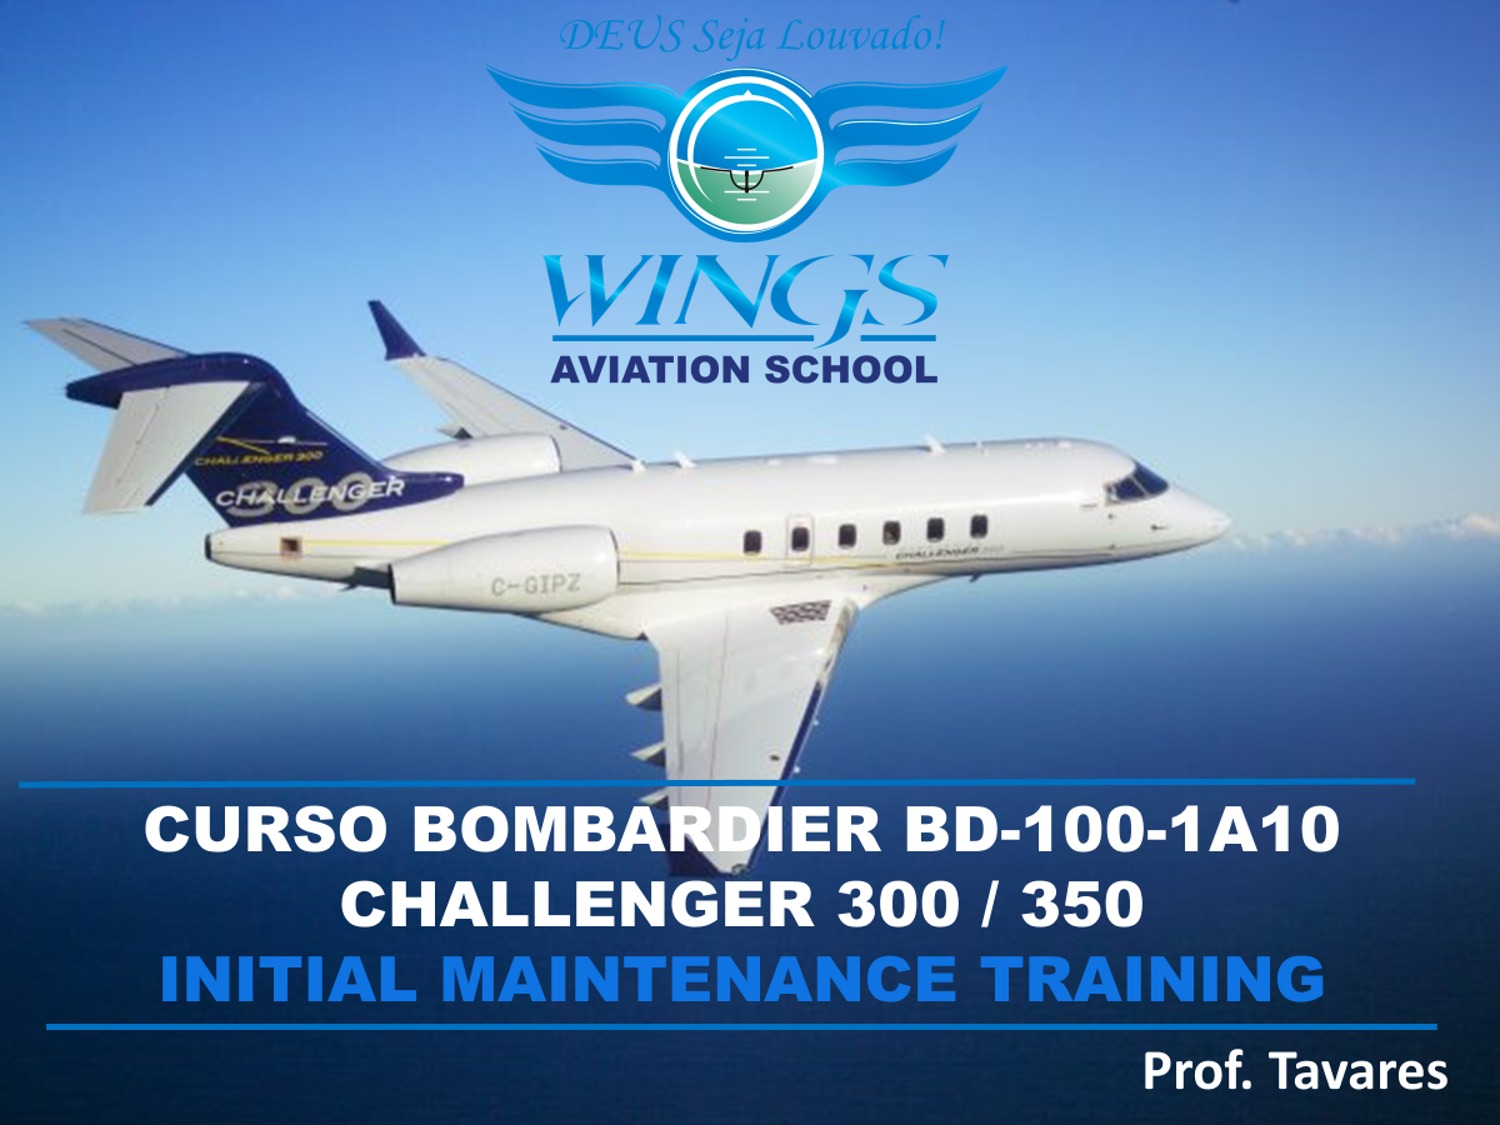 Curso de Manutenção Bombardier Challenger 300/350